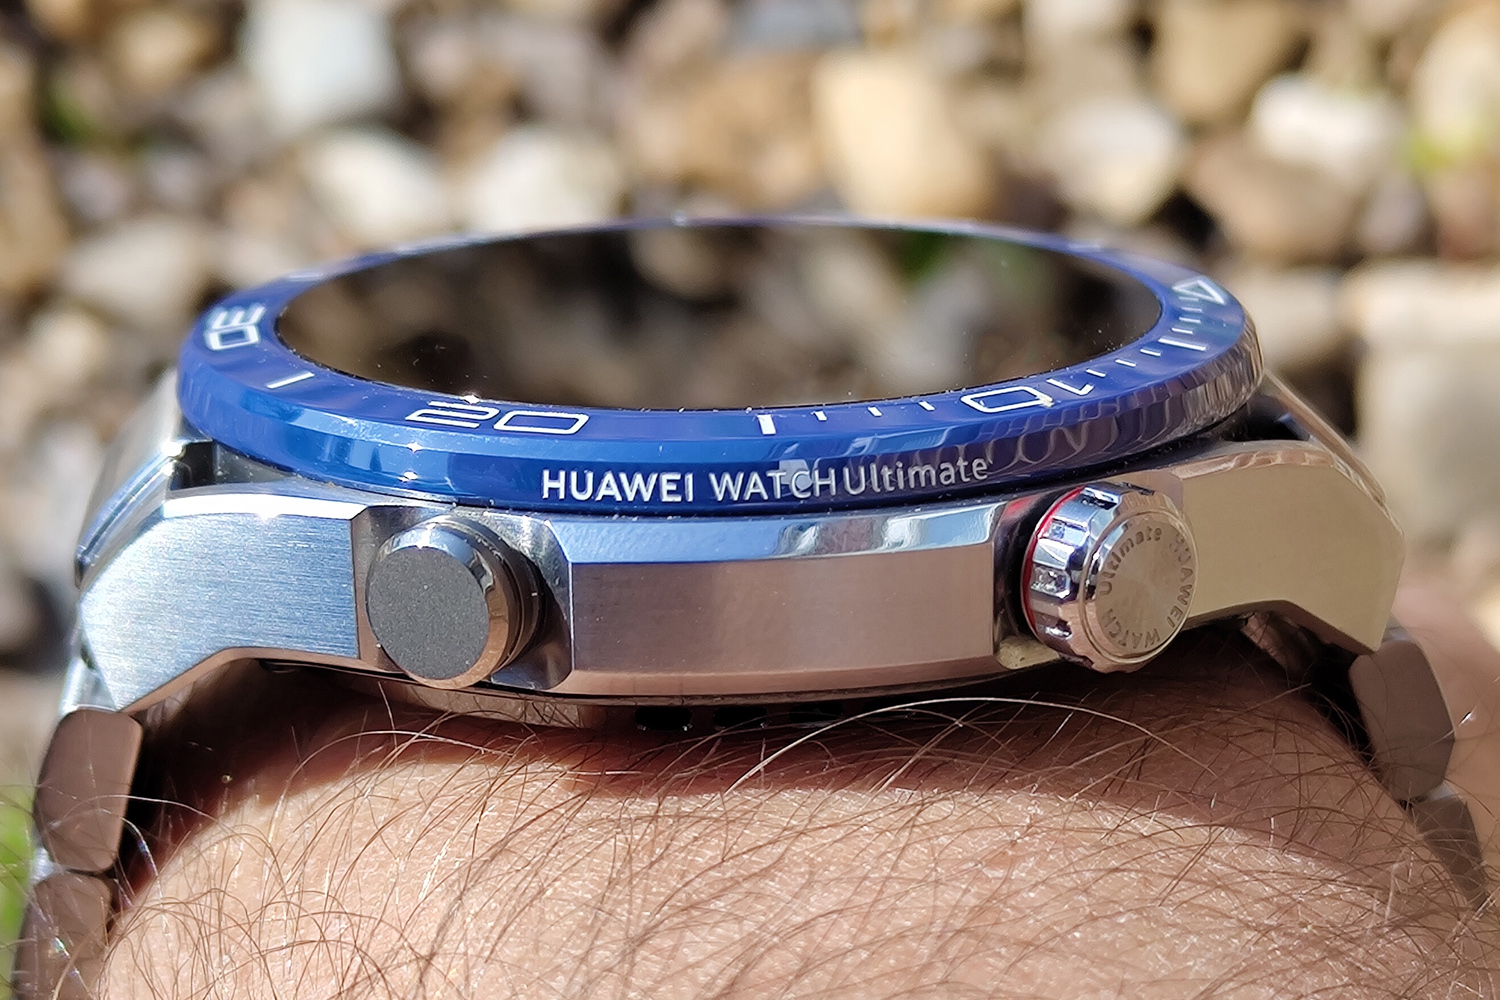 Huawei Watch Ultimate bezel logo